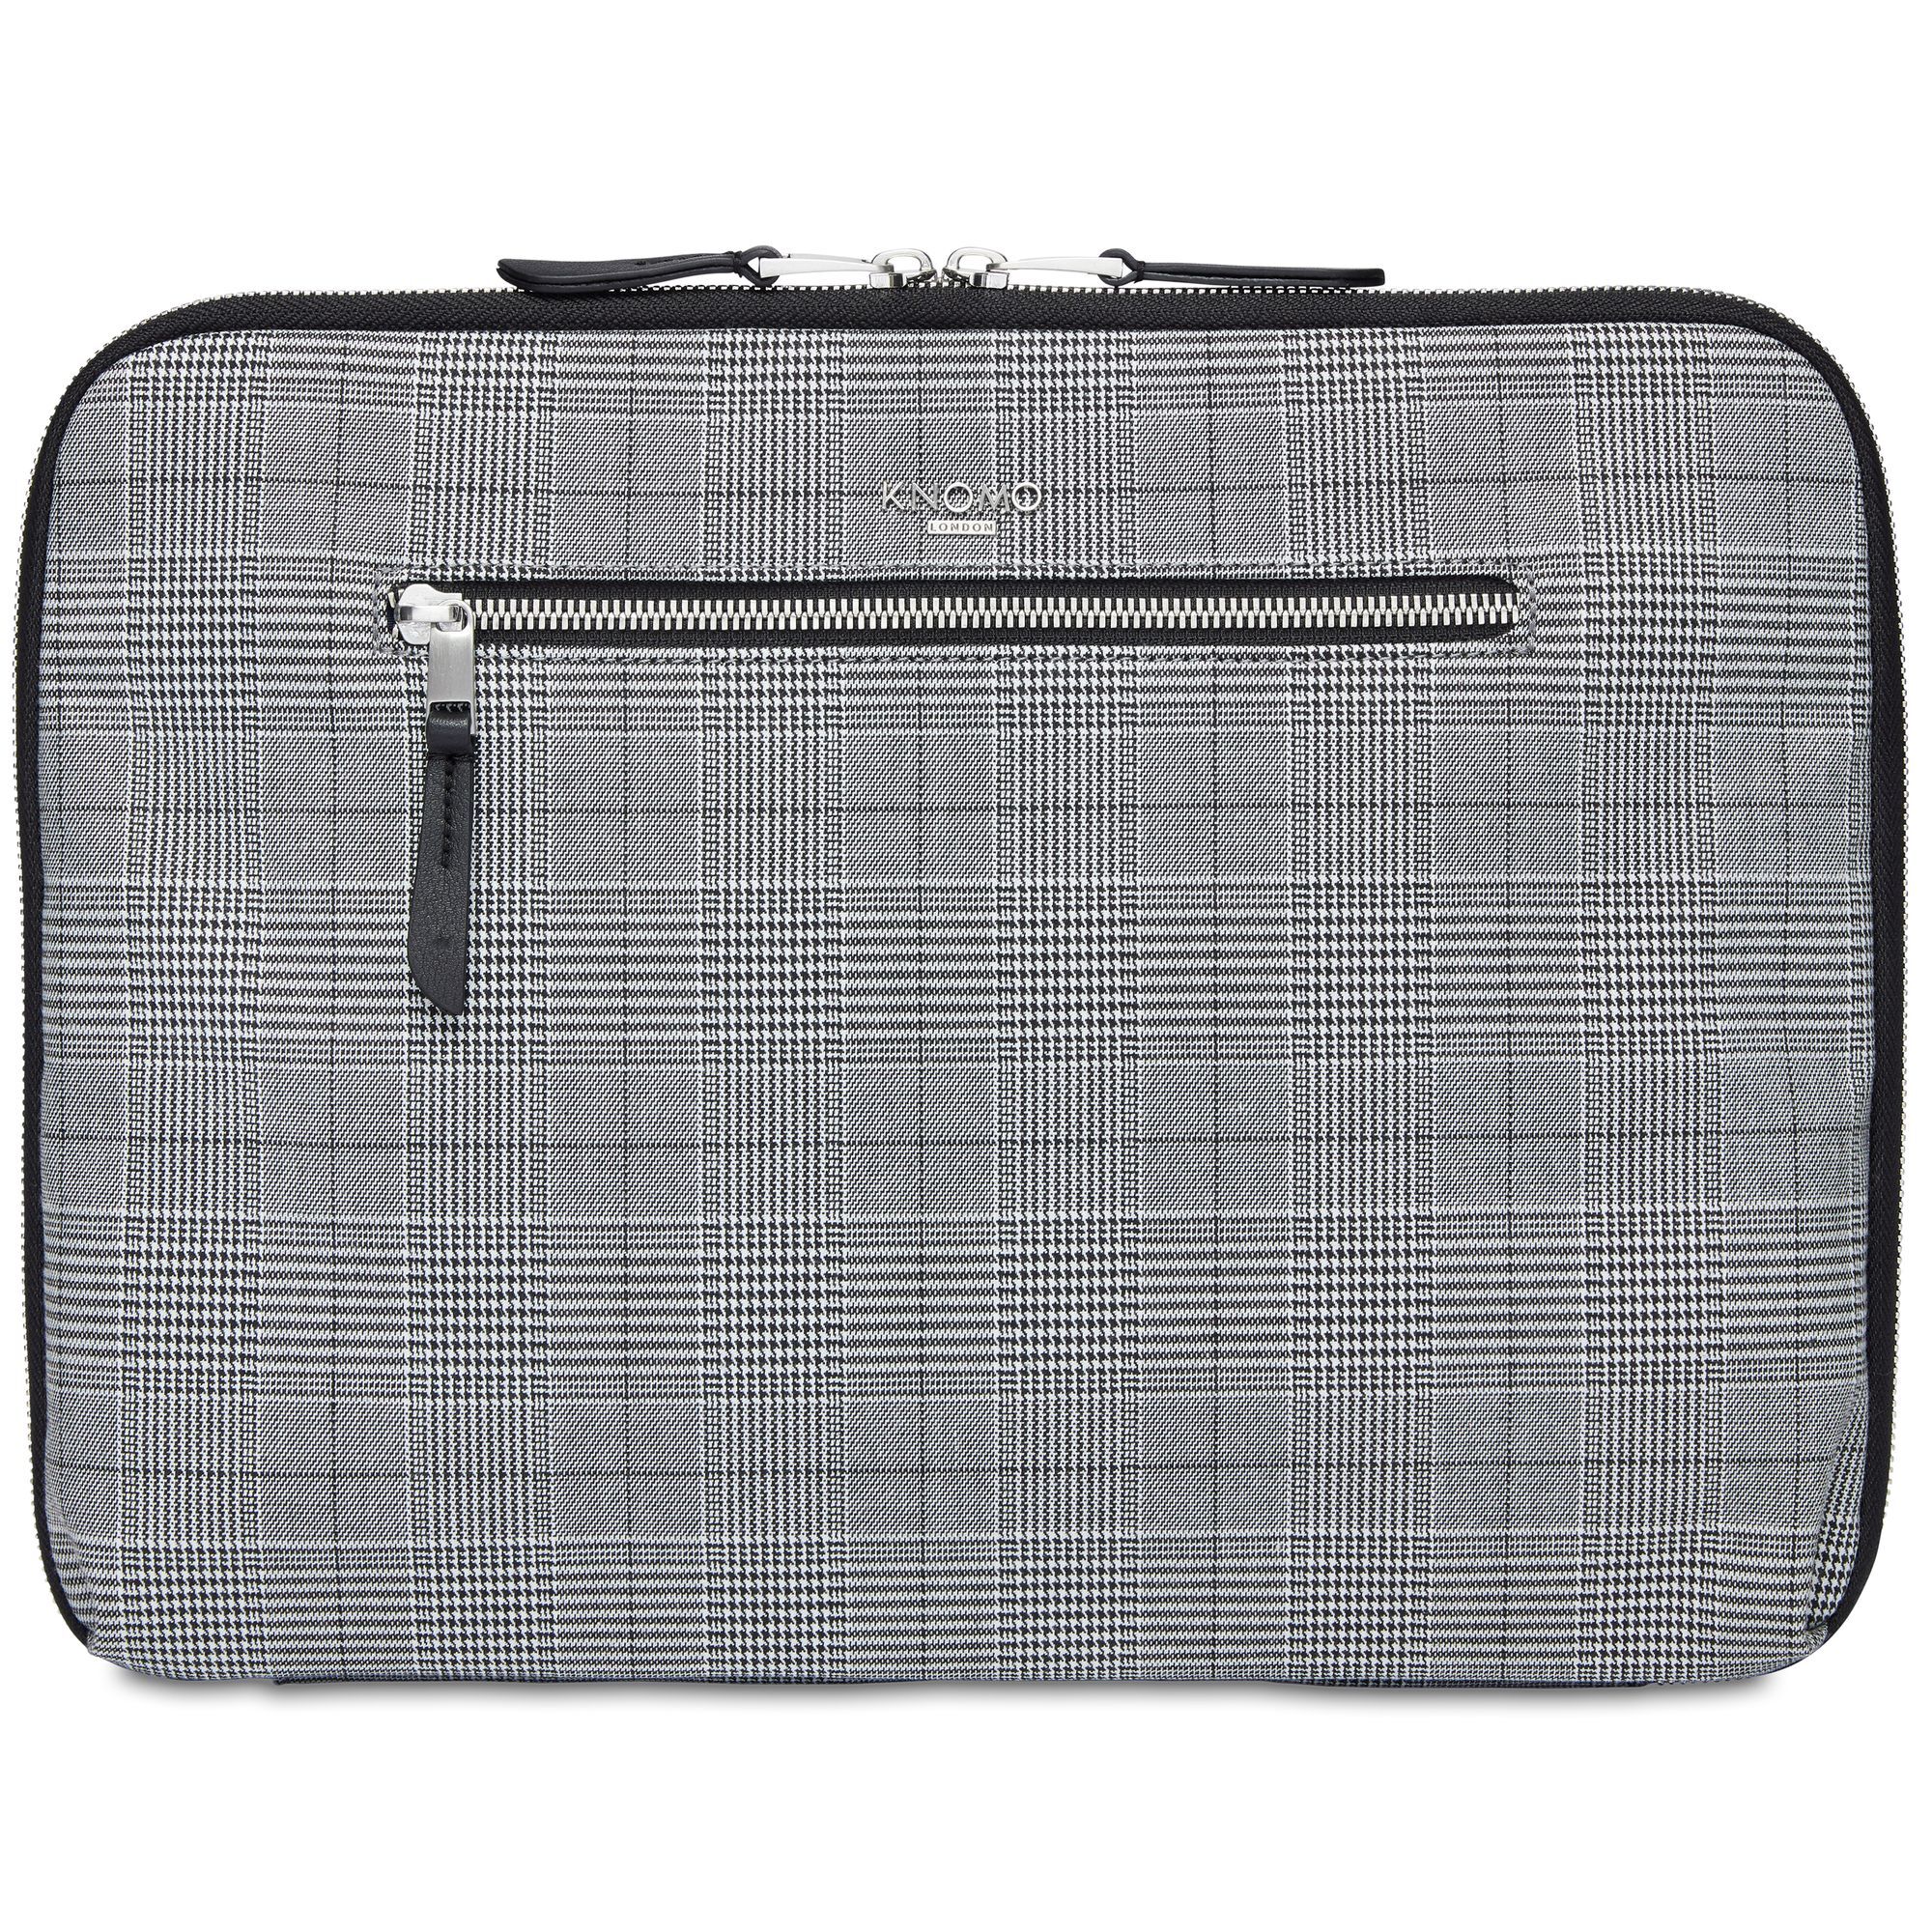 Сумка для ноутбука Knomo Mayfair Knomad Organizer RFID 37 cm Laptopfach, цвет grey check